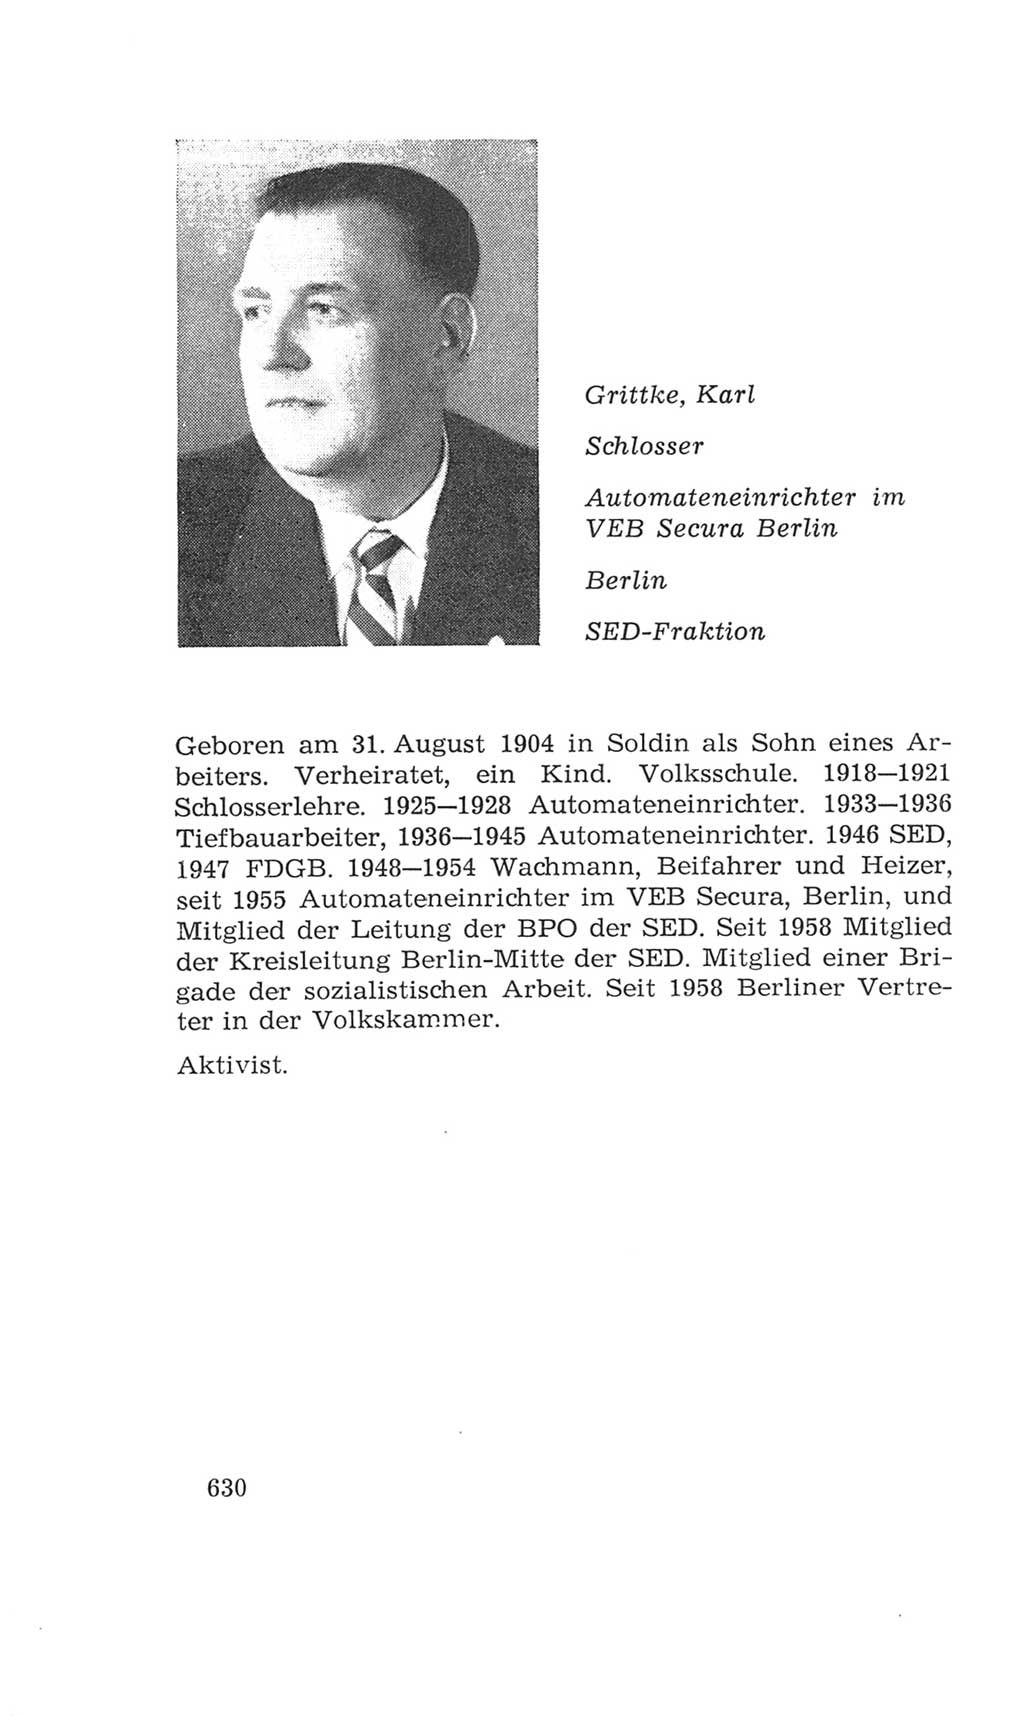 Volkskammer (VK) der Deutschen Demokratischen Republik (DDR), 4. Wahlperiode 1963-1967, Seite 630 (VK. DDR 4. WP. 1963-1967, S. 630)